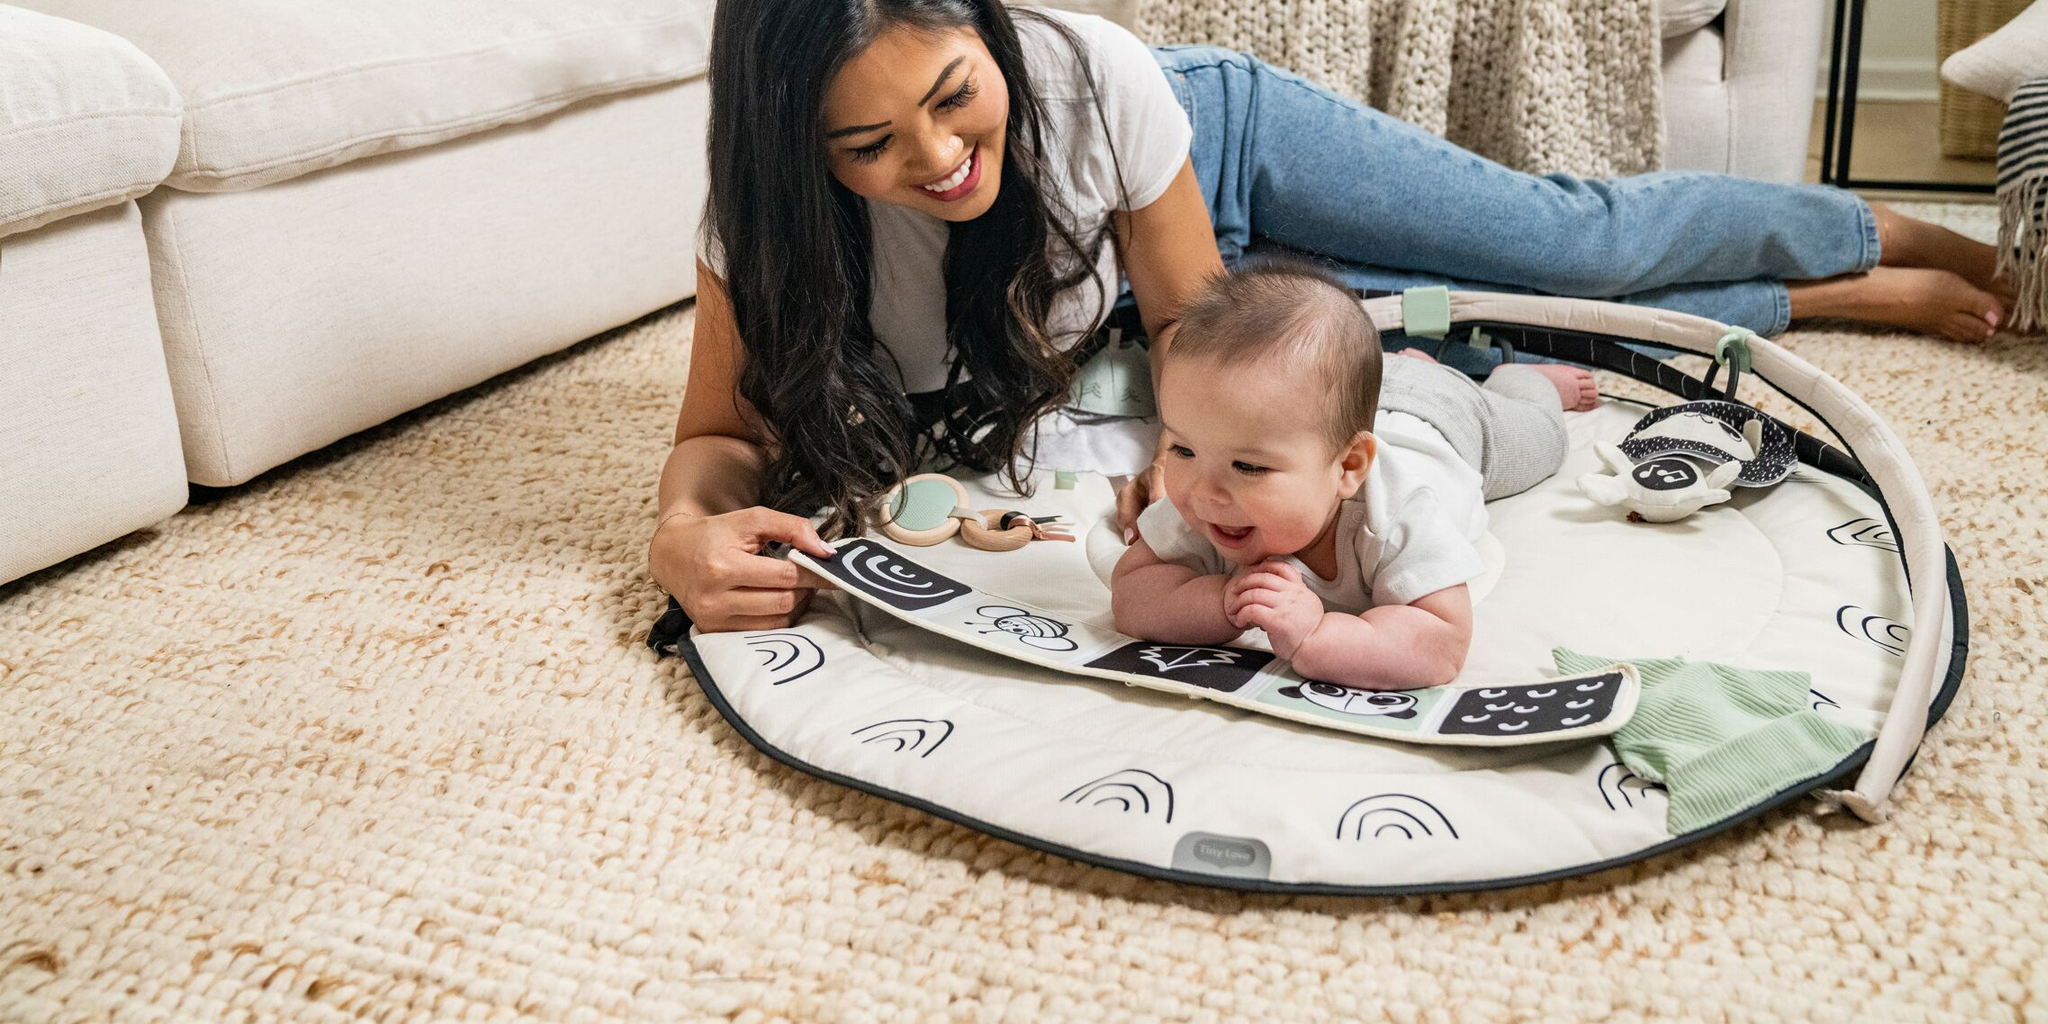 baby on activity floor mat